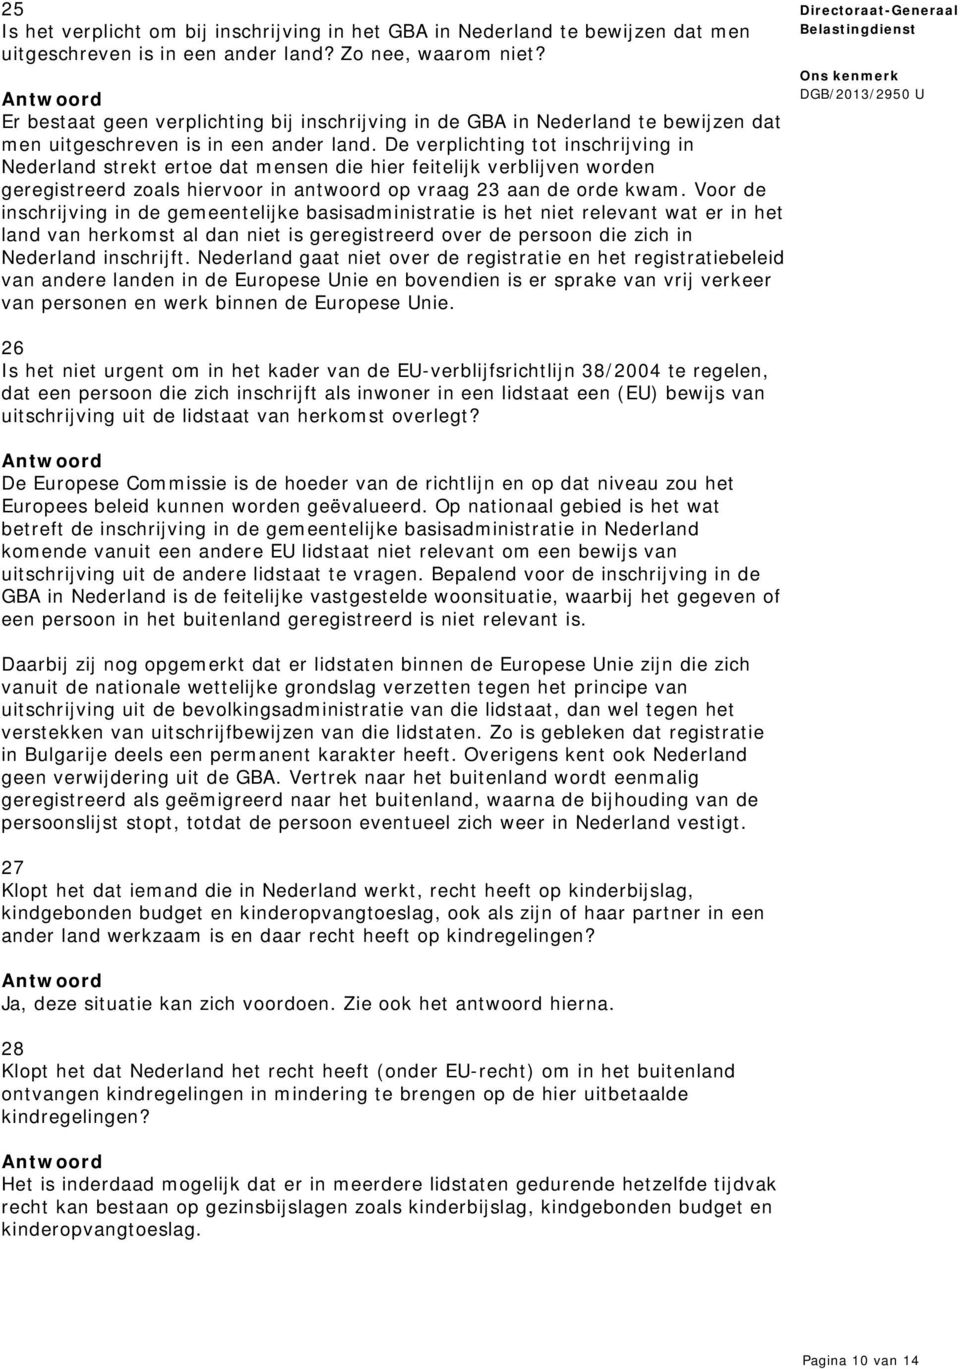 De verplichting tot inschrijving in Nederland strekt ertoe dat mensen die hier feitelijk verblijven worden geregistreerd zoals hiervoor in antwoord op vraag 23 aan de orde kwam.